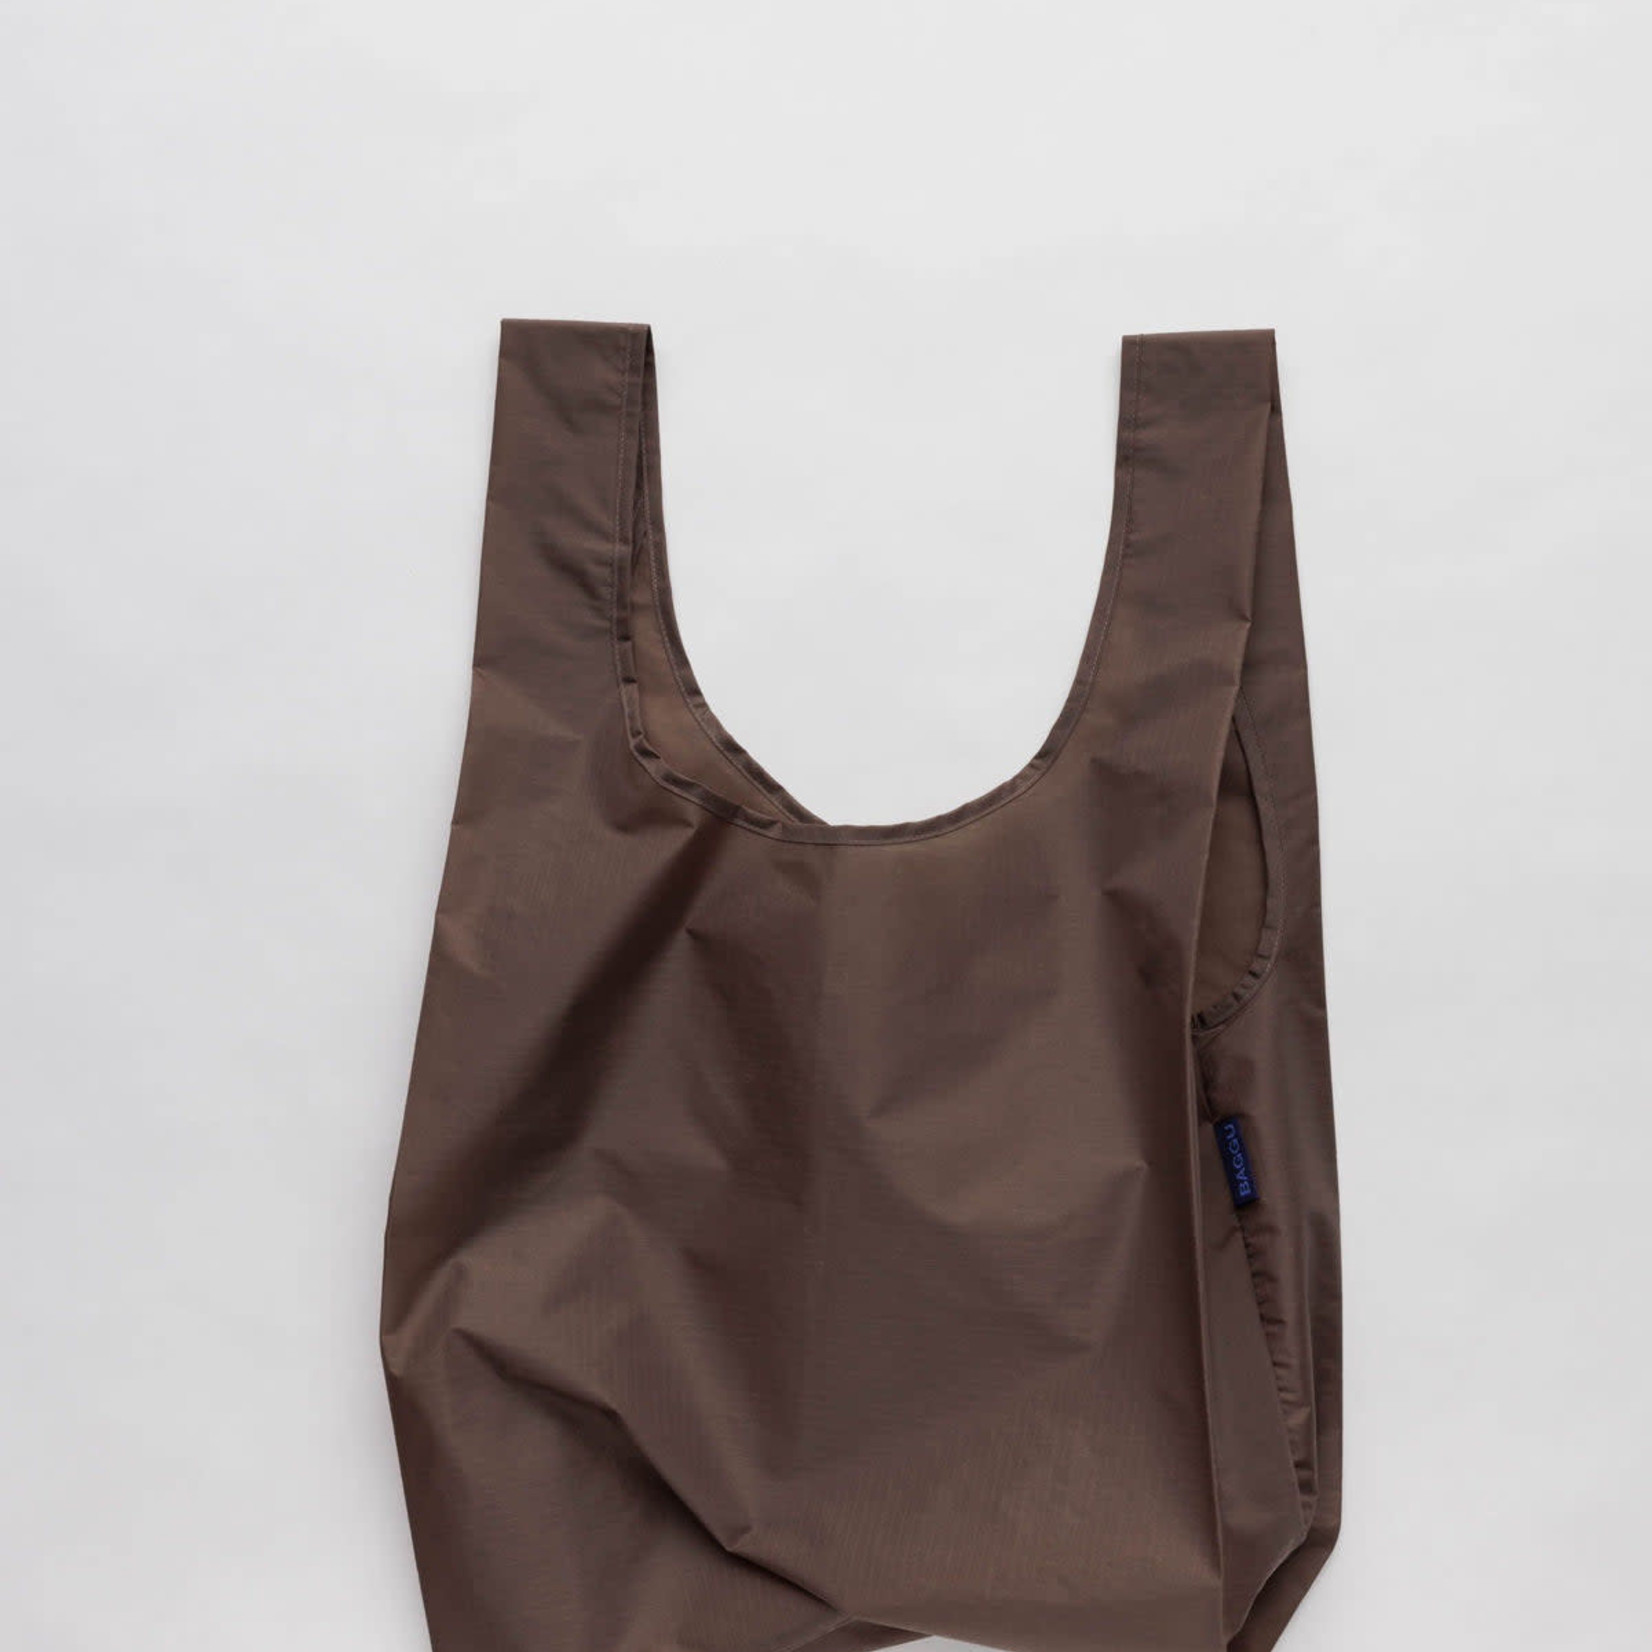 Baggu Baggu Reusable Bag Standard Cocoa